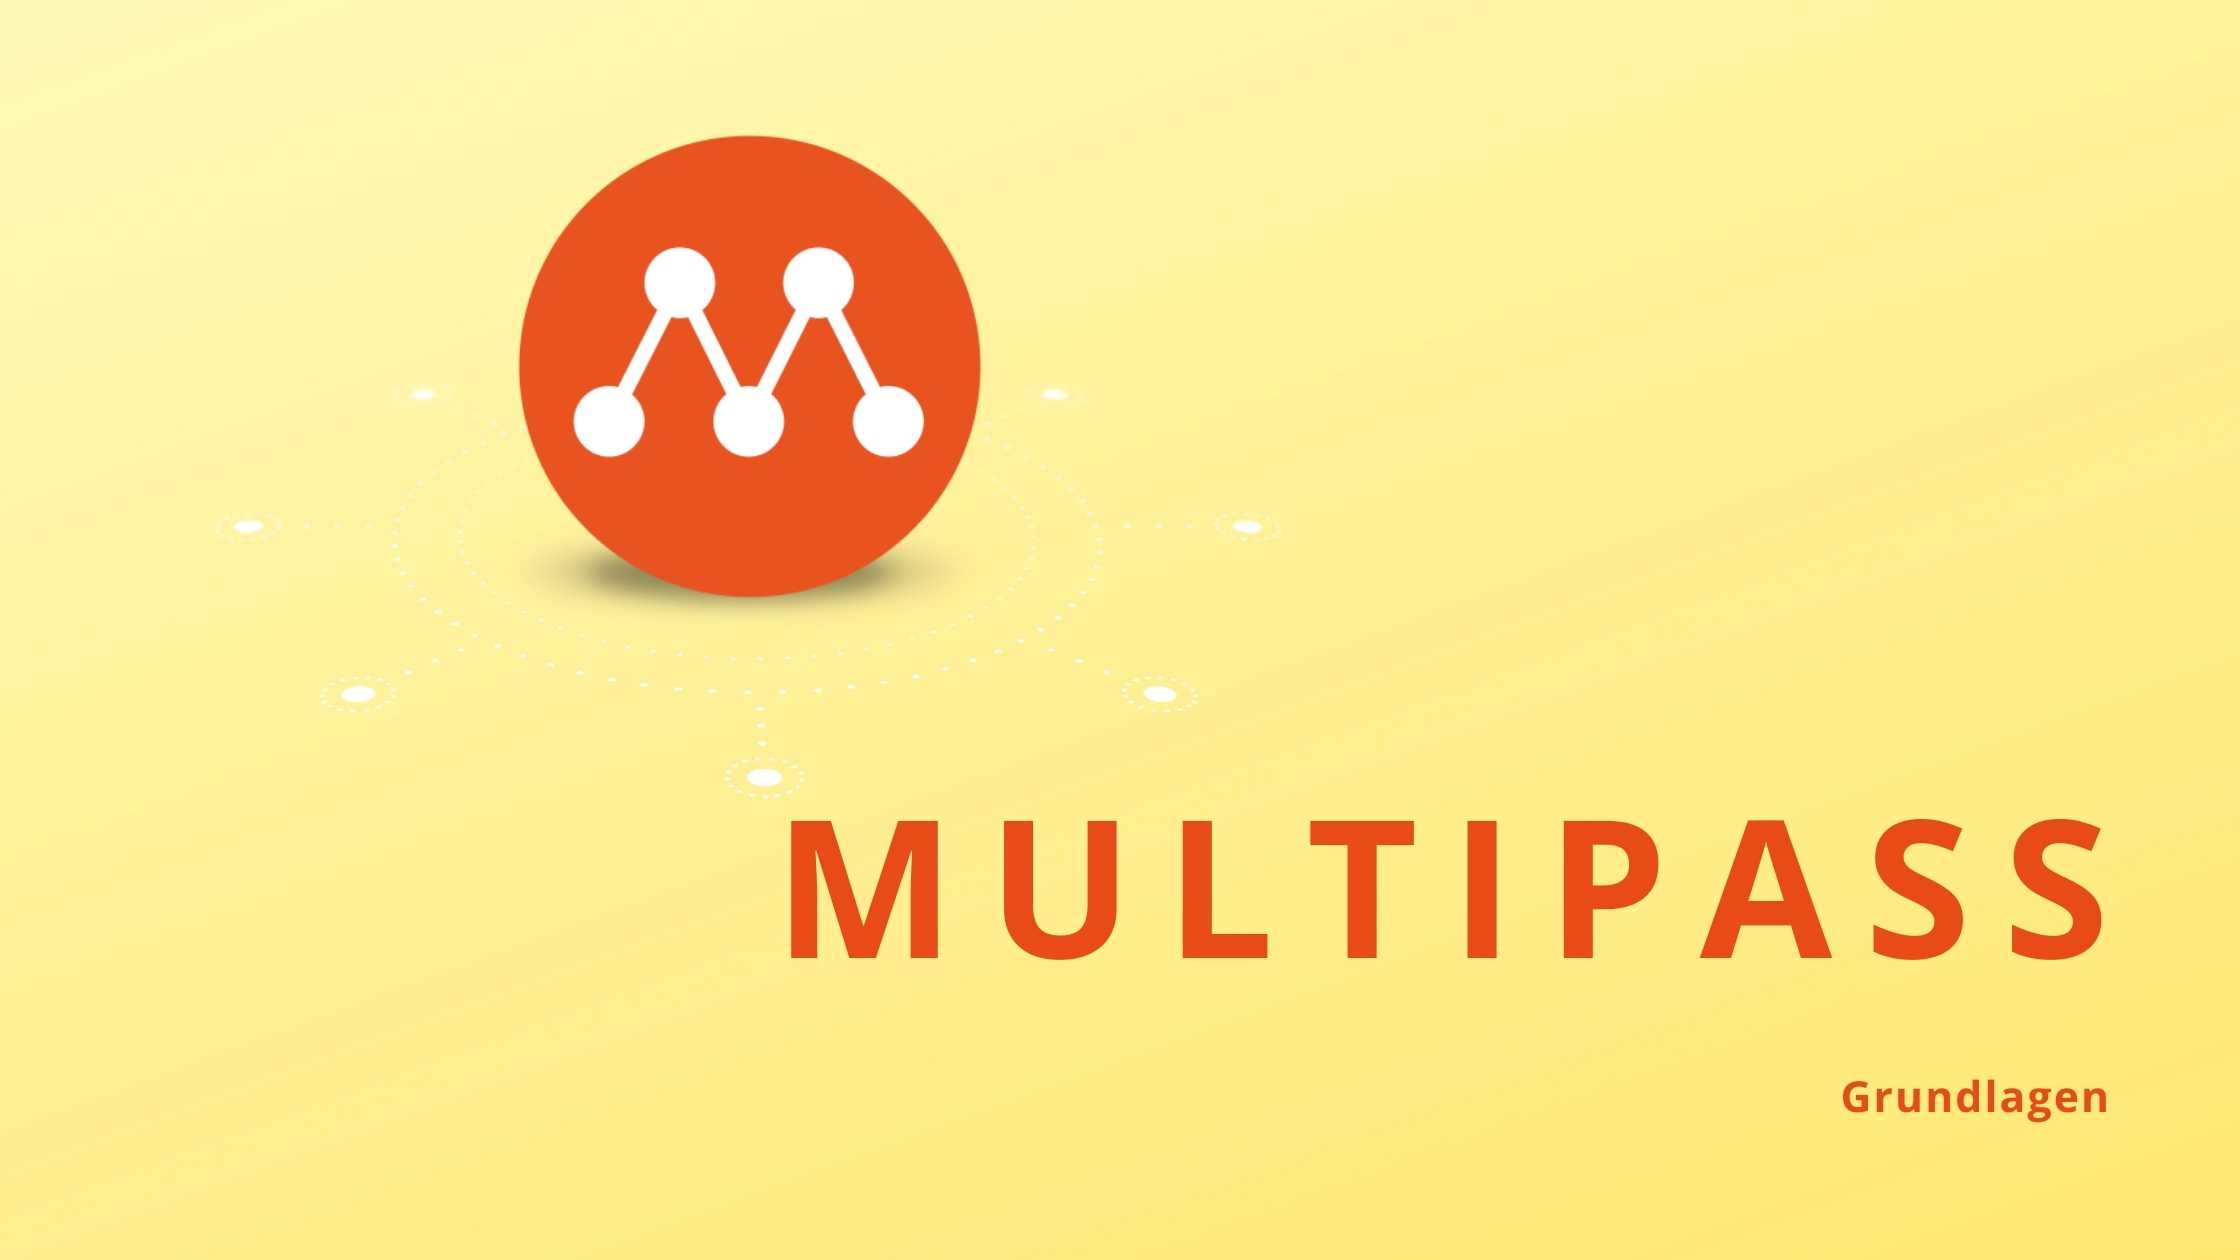 Multipass Grundlagen - "Schnelle Ubuntu VMs mit Multipass"